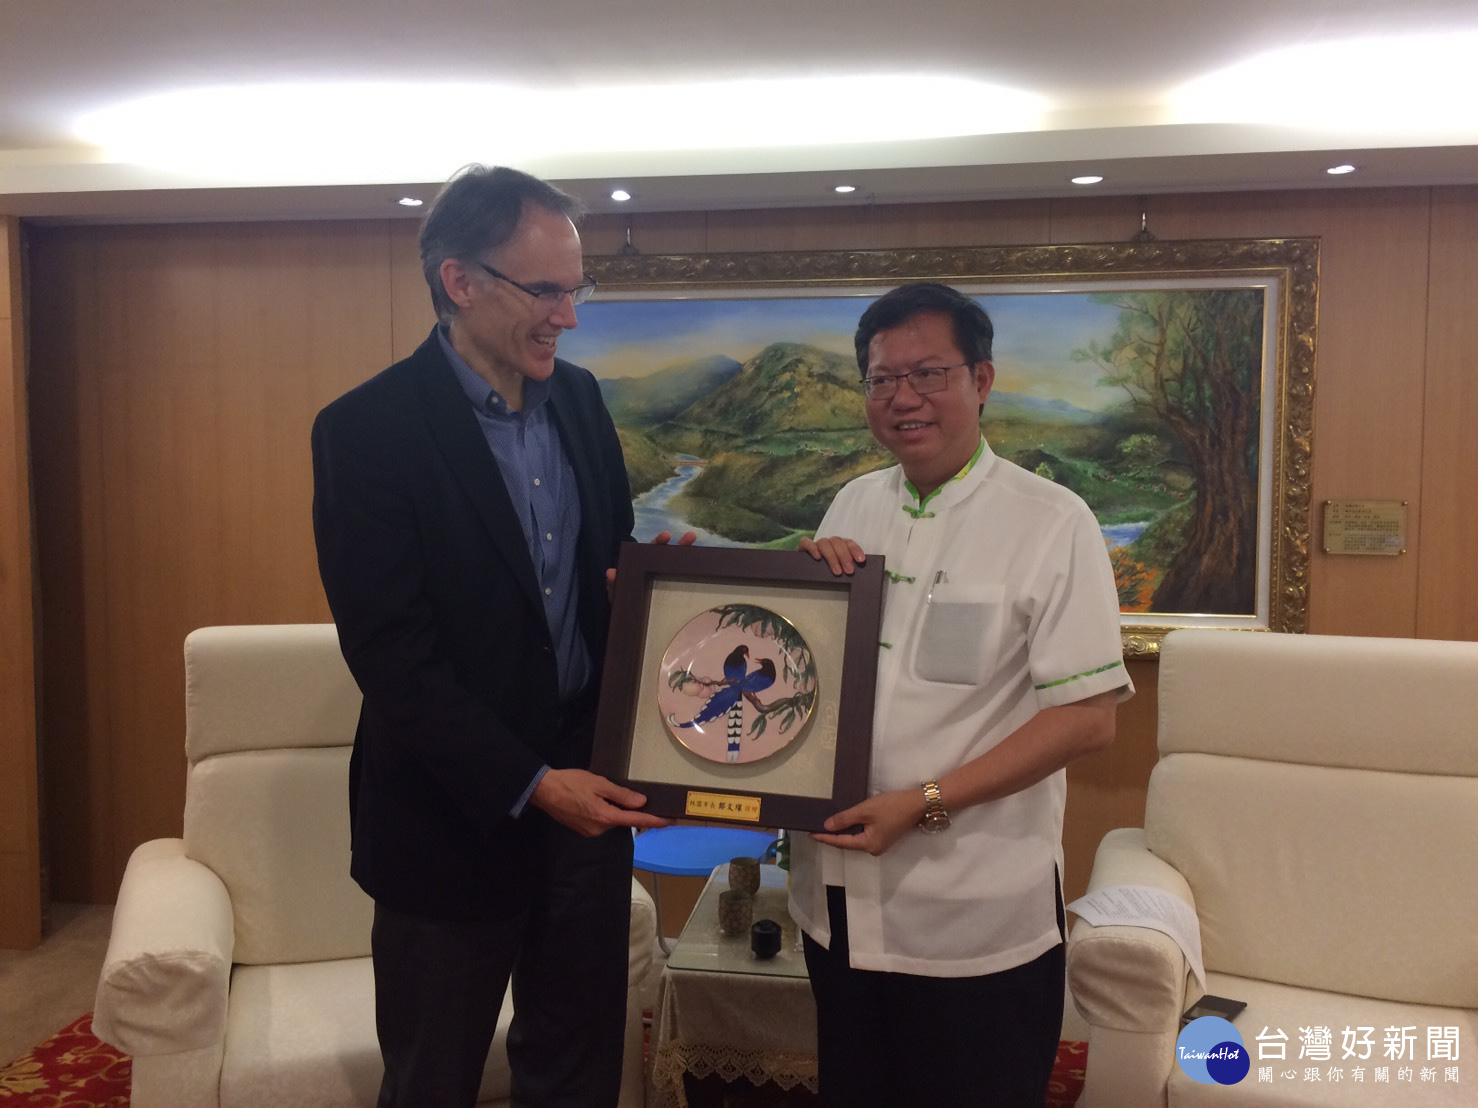 鄭文燦市長致贈台灣藍鵲瓷盤、土產花生糖予美國職棒大聯盟國際副總裁Jim Small。